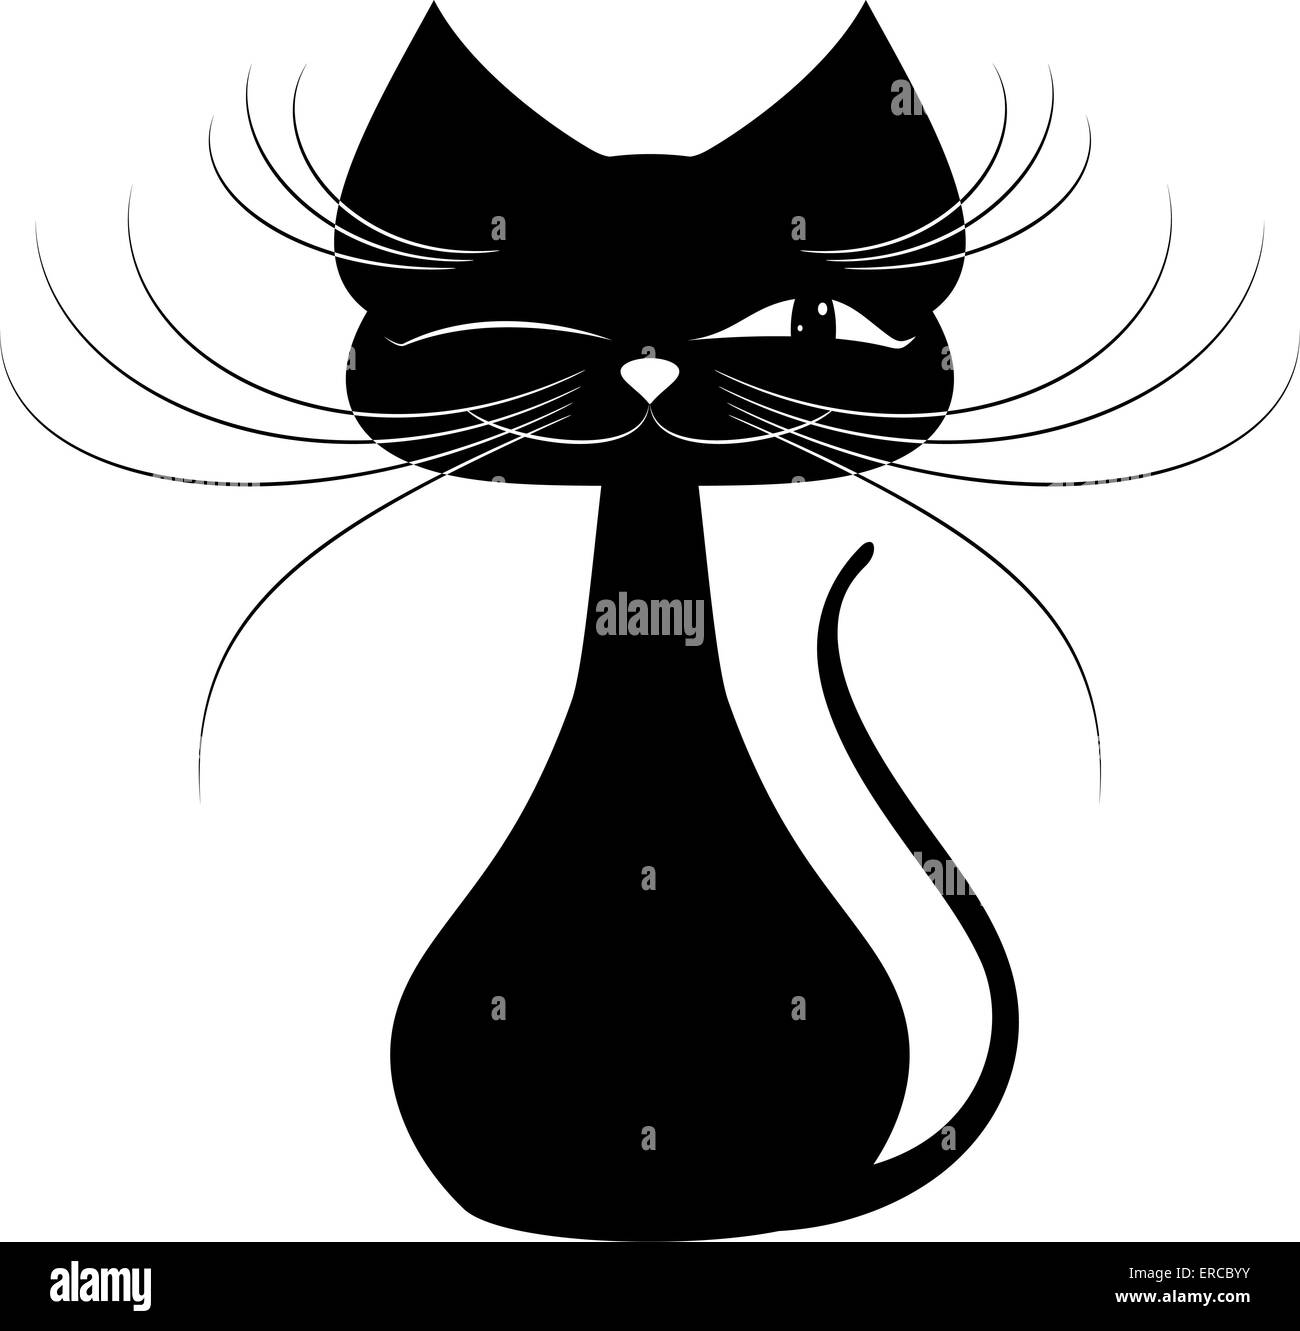 Schwarze Katze auf einem weißen Hintergrund Stockfoto